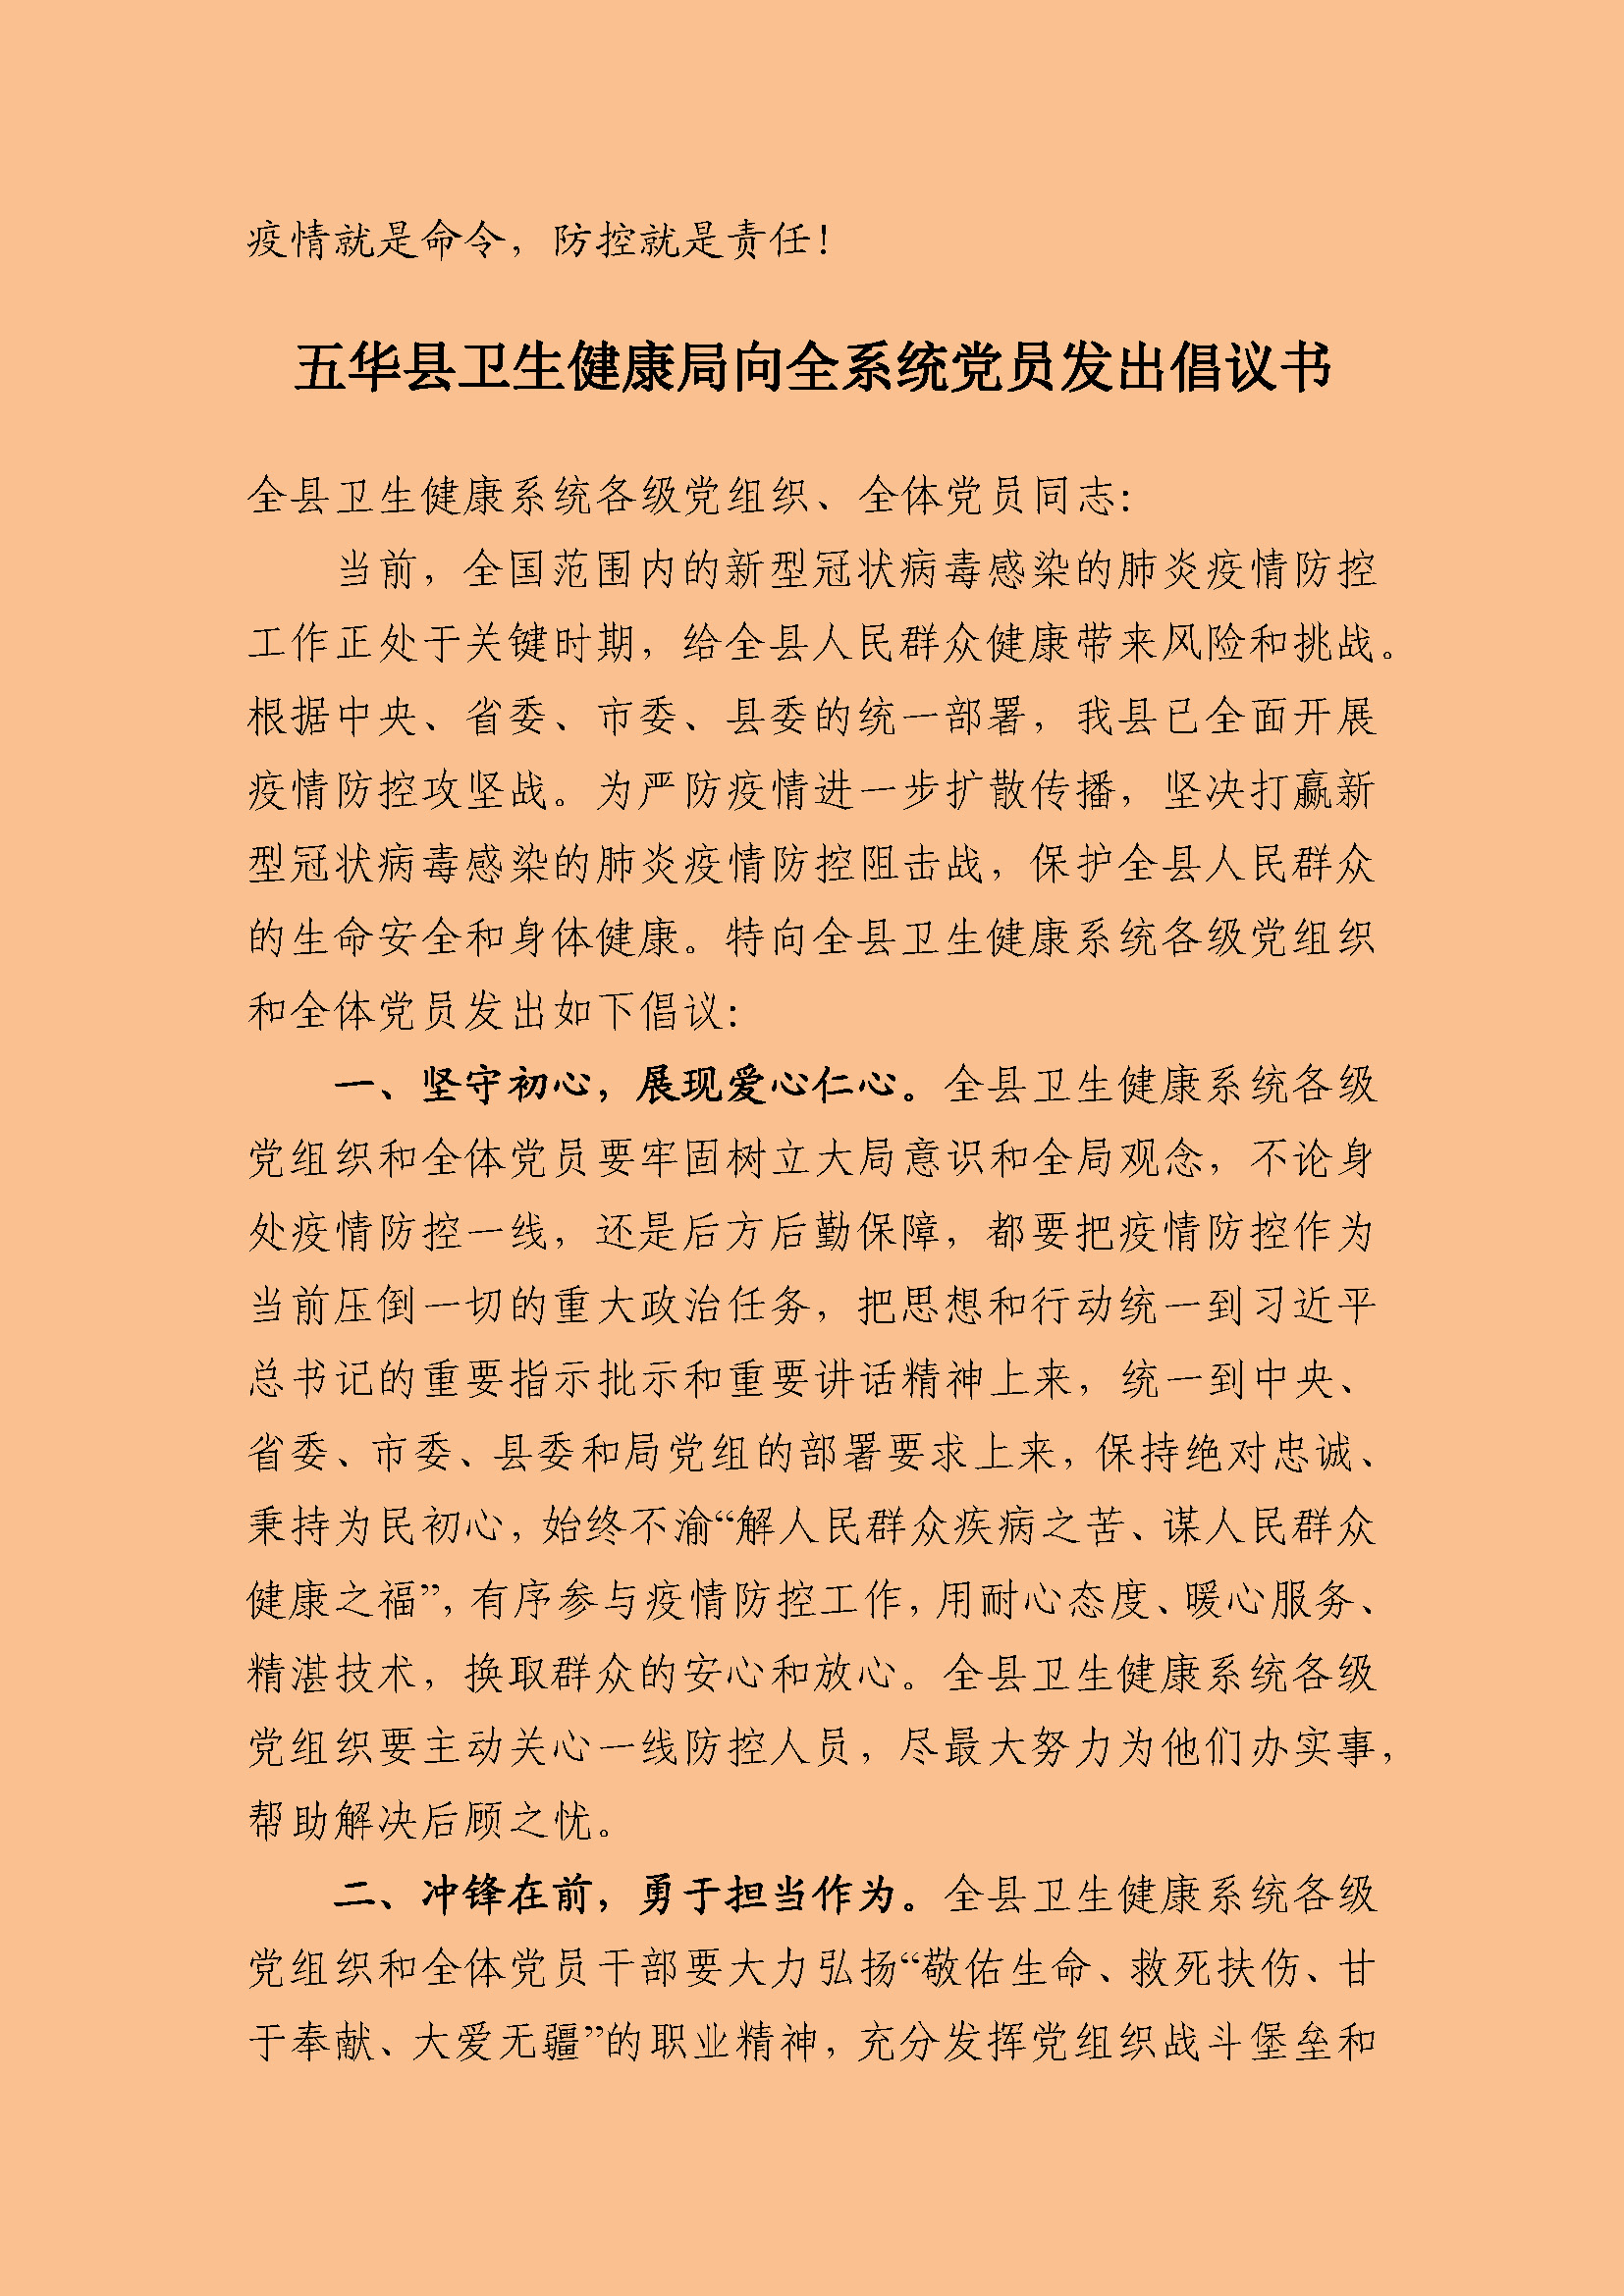 五华县卫生健康局向全系统党员发出倡议书(1)_页面_1.jpg